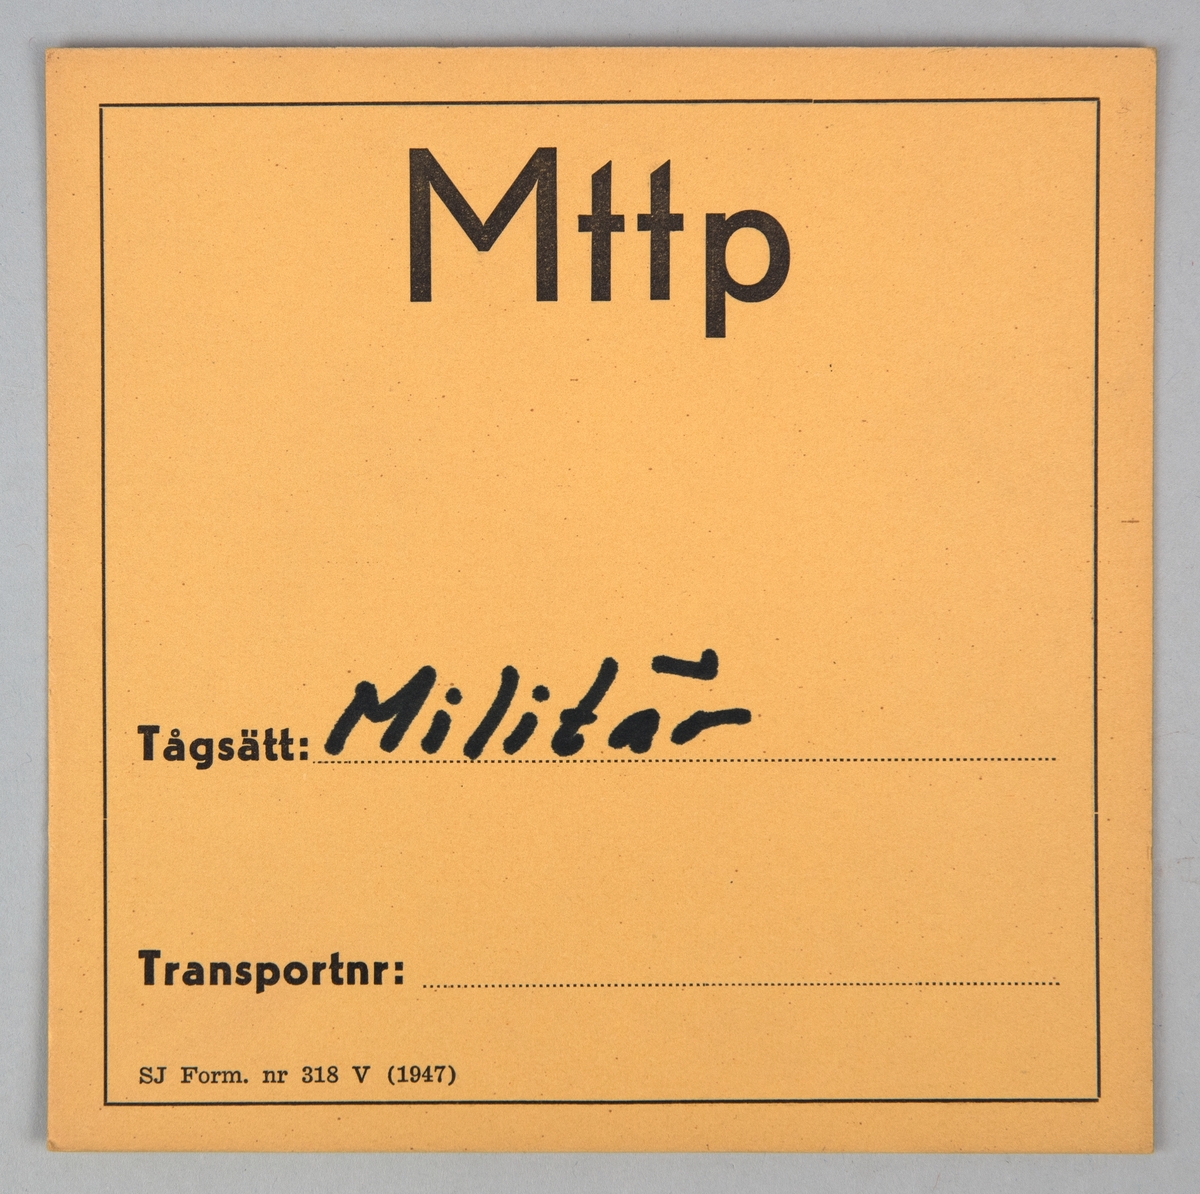 Kvadratiskt vagnskort av papper. På båda sidorna finns en tunn svart ram, innanför ramen står det tryckt i svart "Mttp", "Tågsätt", "Transportnr" och "SJ Form. nr 318 V (1947)".
På ena sidan står det skrivet med svart penna "Militär" vid fältet för Tågsätt.